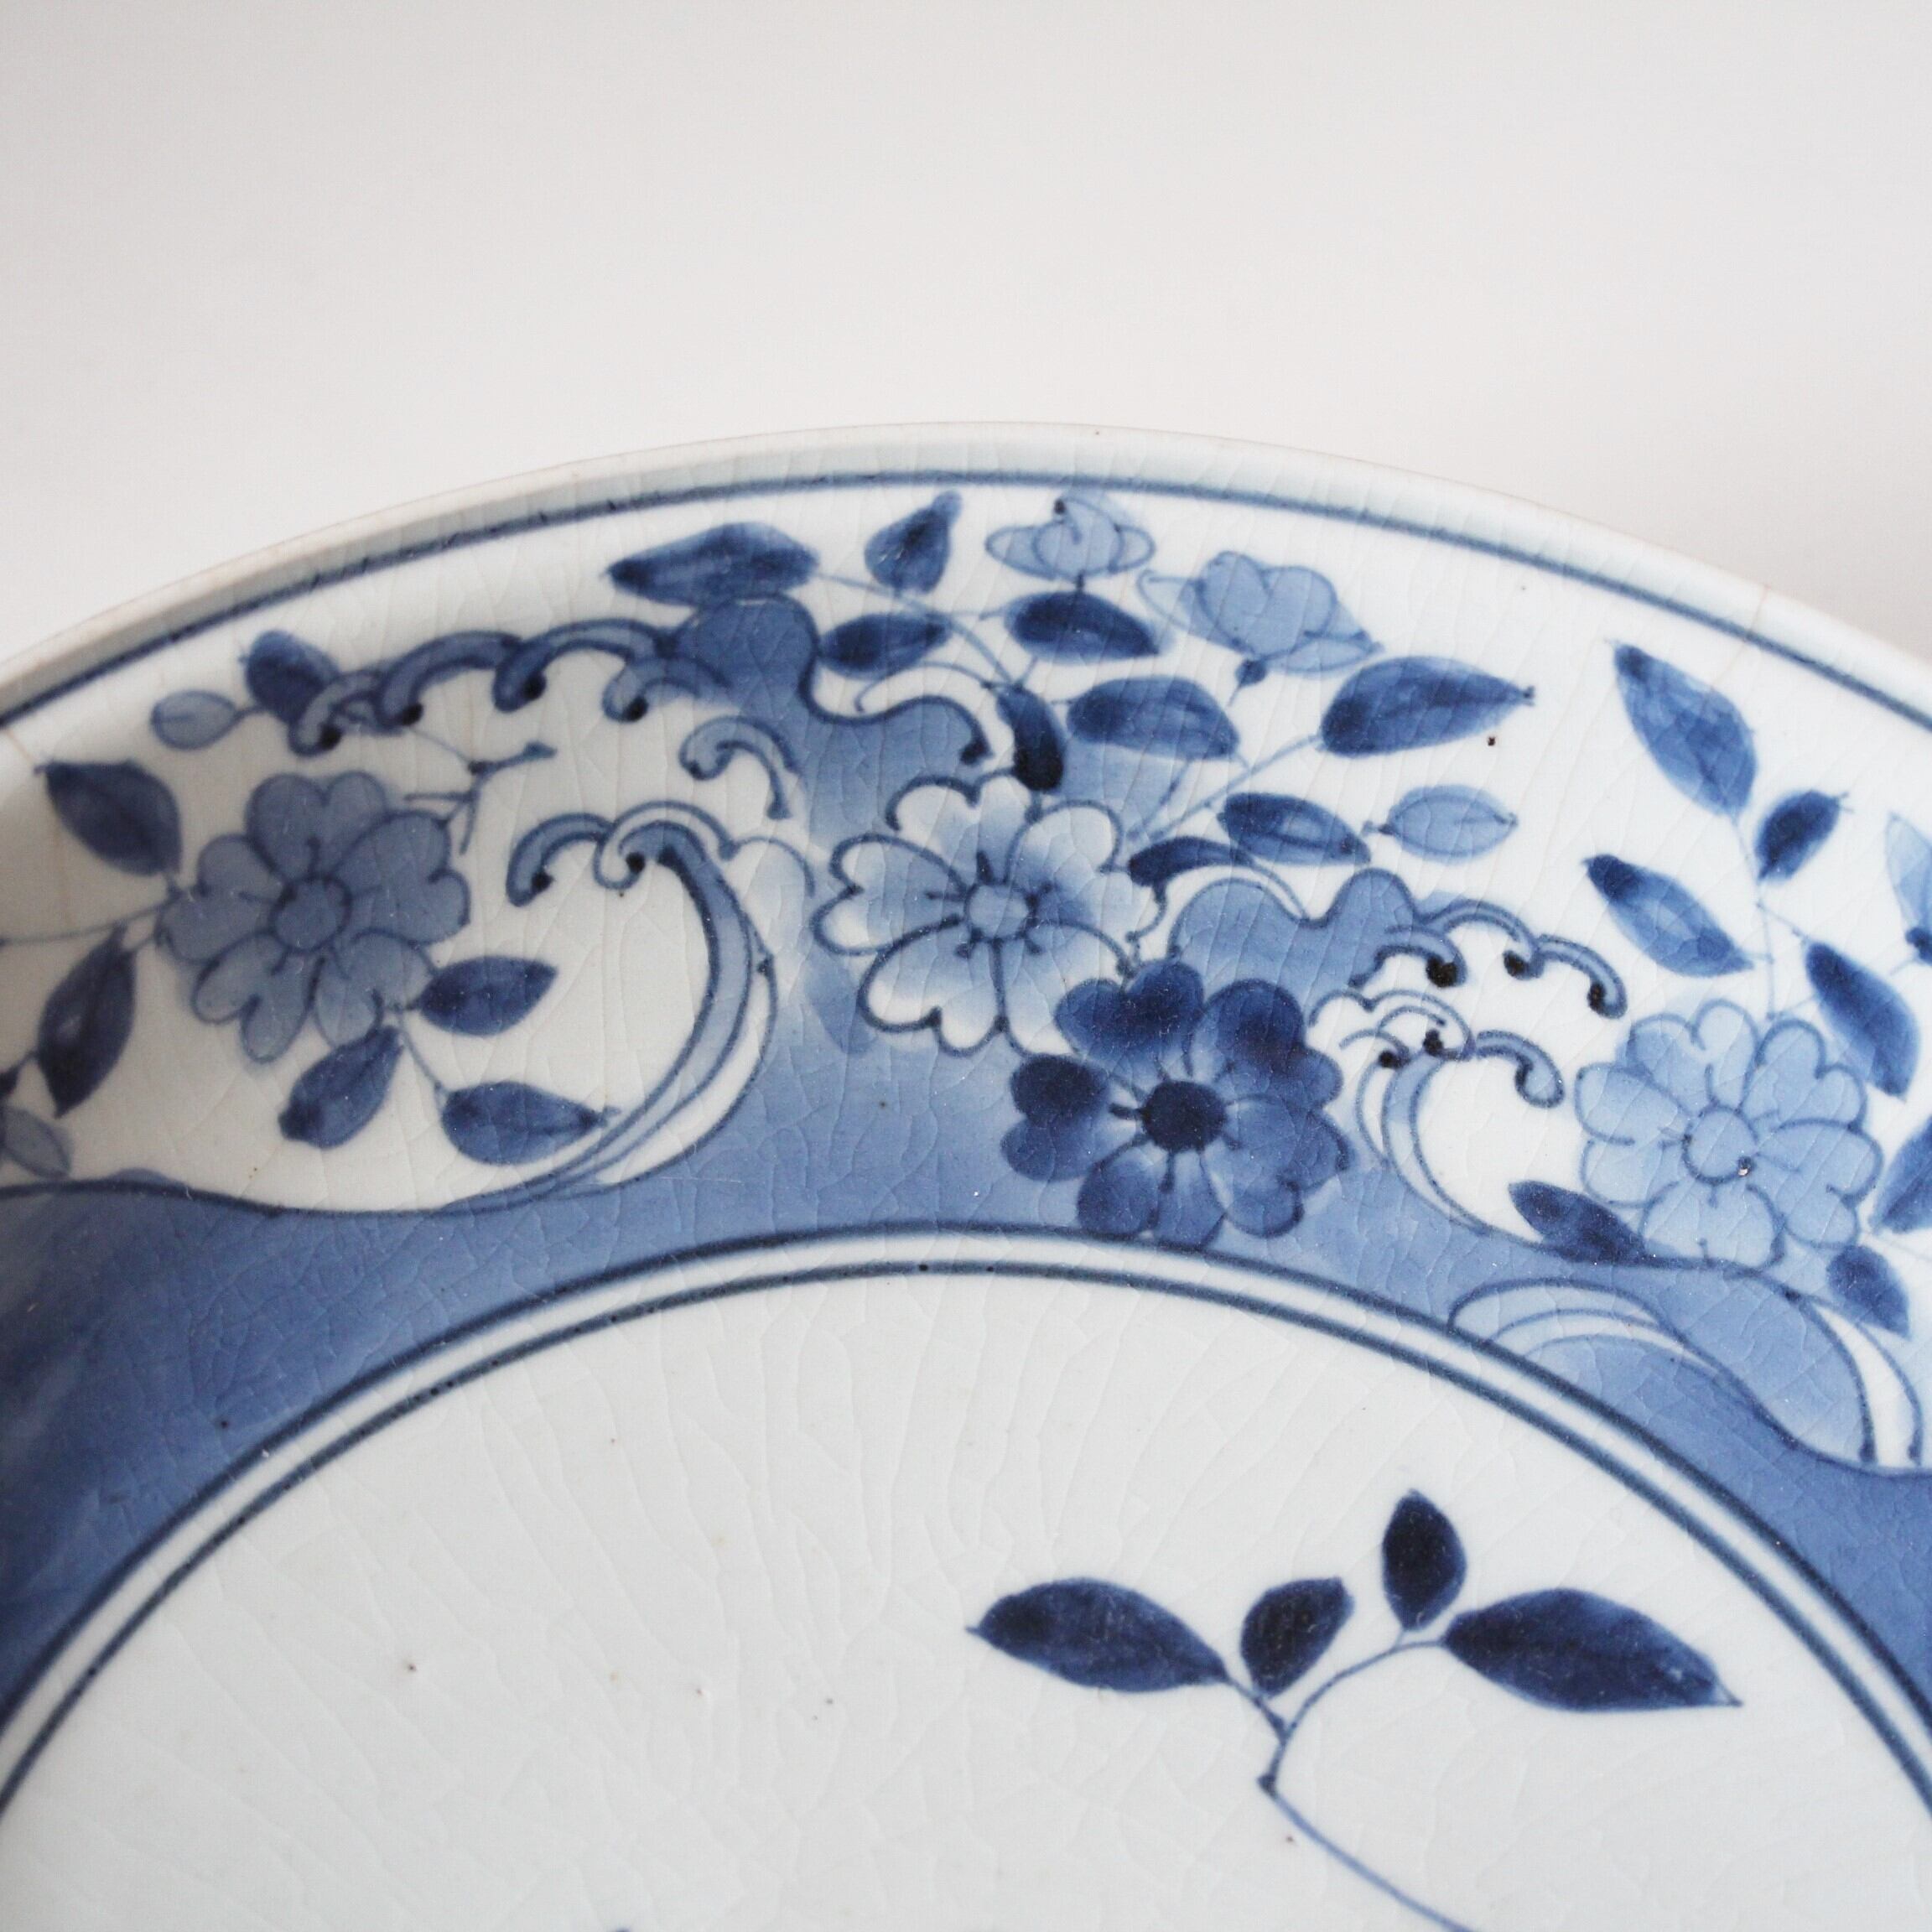 古伊万里染付柘榴花筏文大皿 d31.6cm　Imari Blue and White Large Dish, Design of  Pomegranates and Sakura Cherry Blossom Petals Floating on Waves　17th-18th C